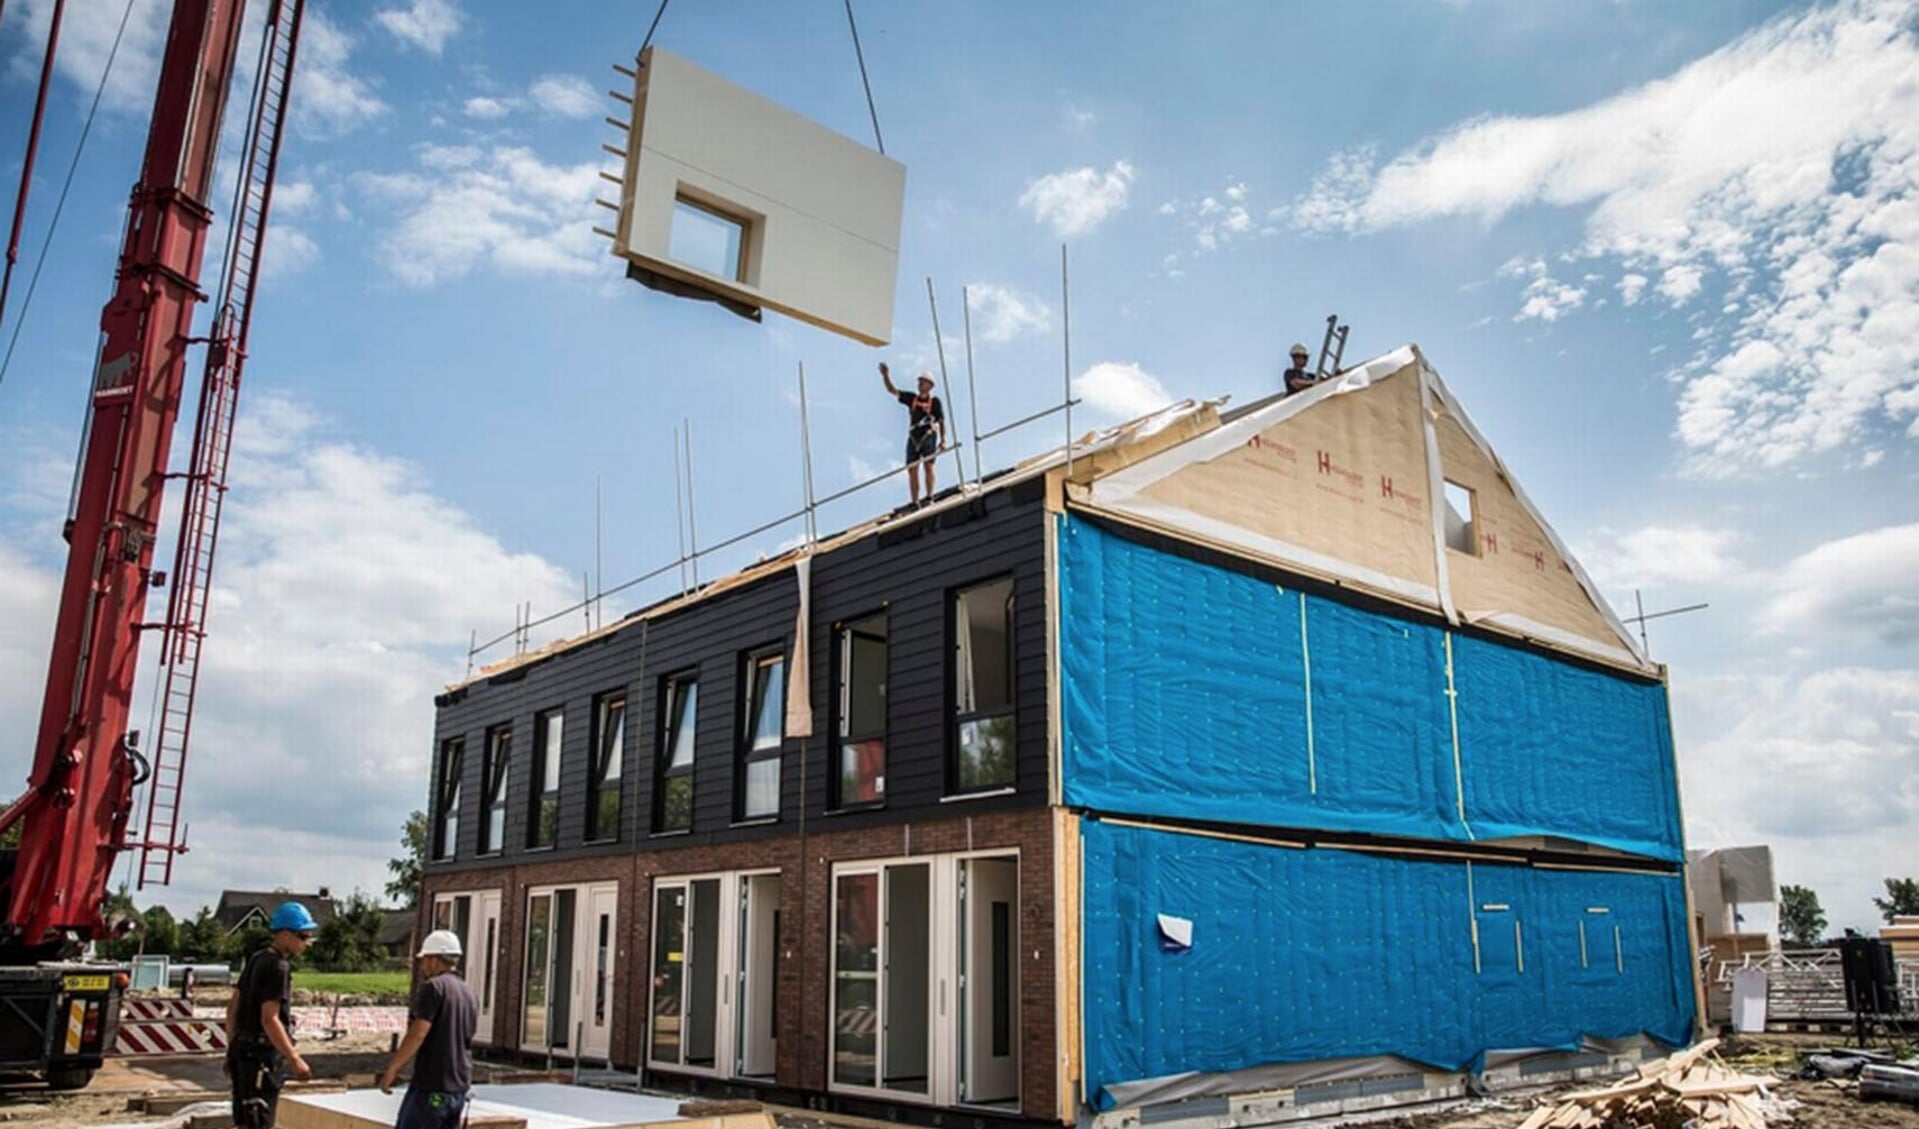 Flexibele bedden voor arbeidsmigranten moeten 500 woningen vrijhouden voor reguliere woningmarkt.